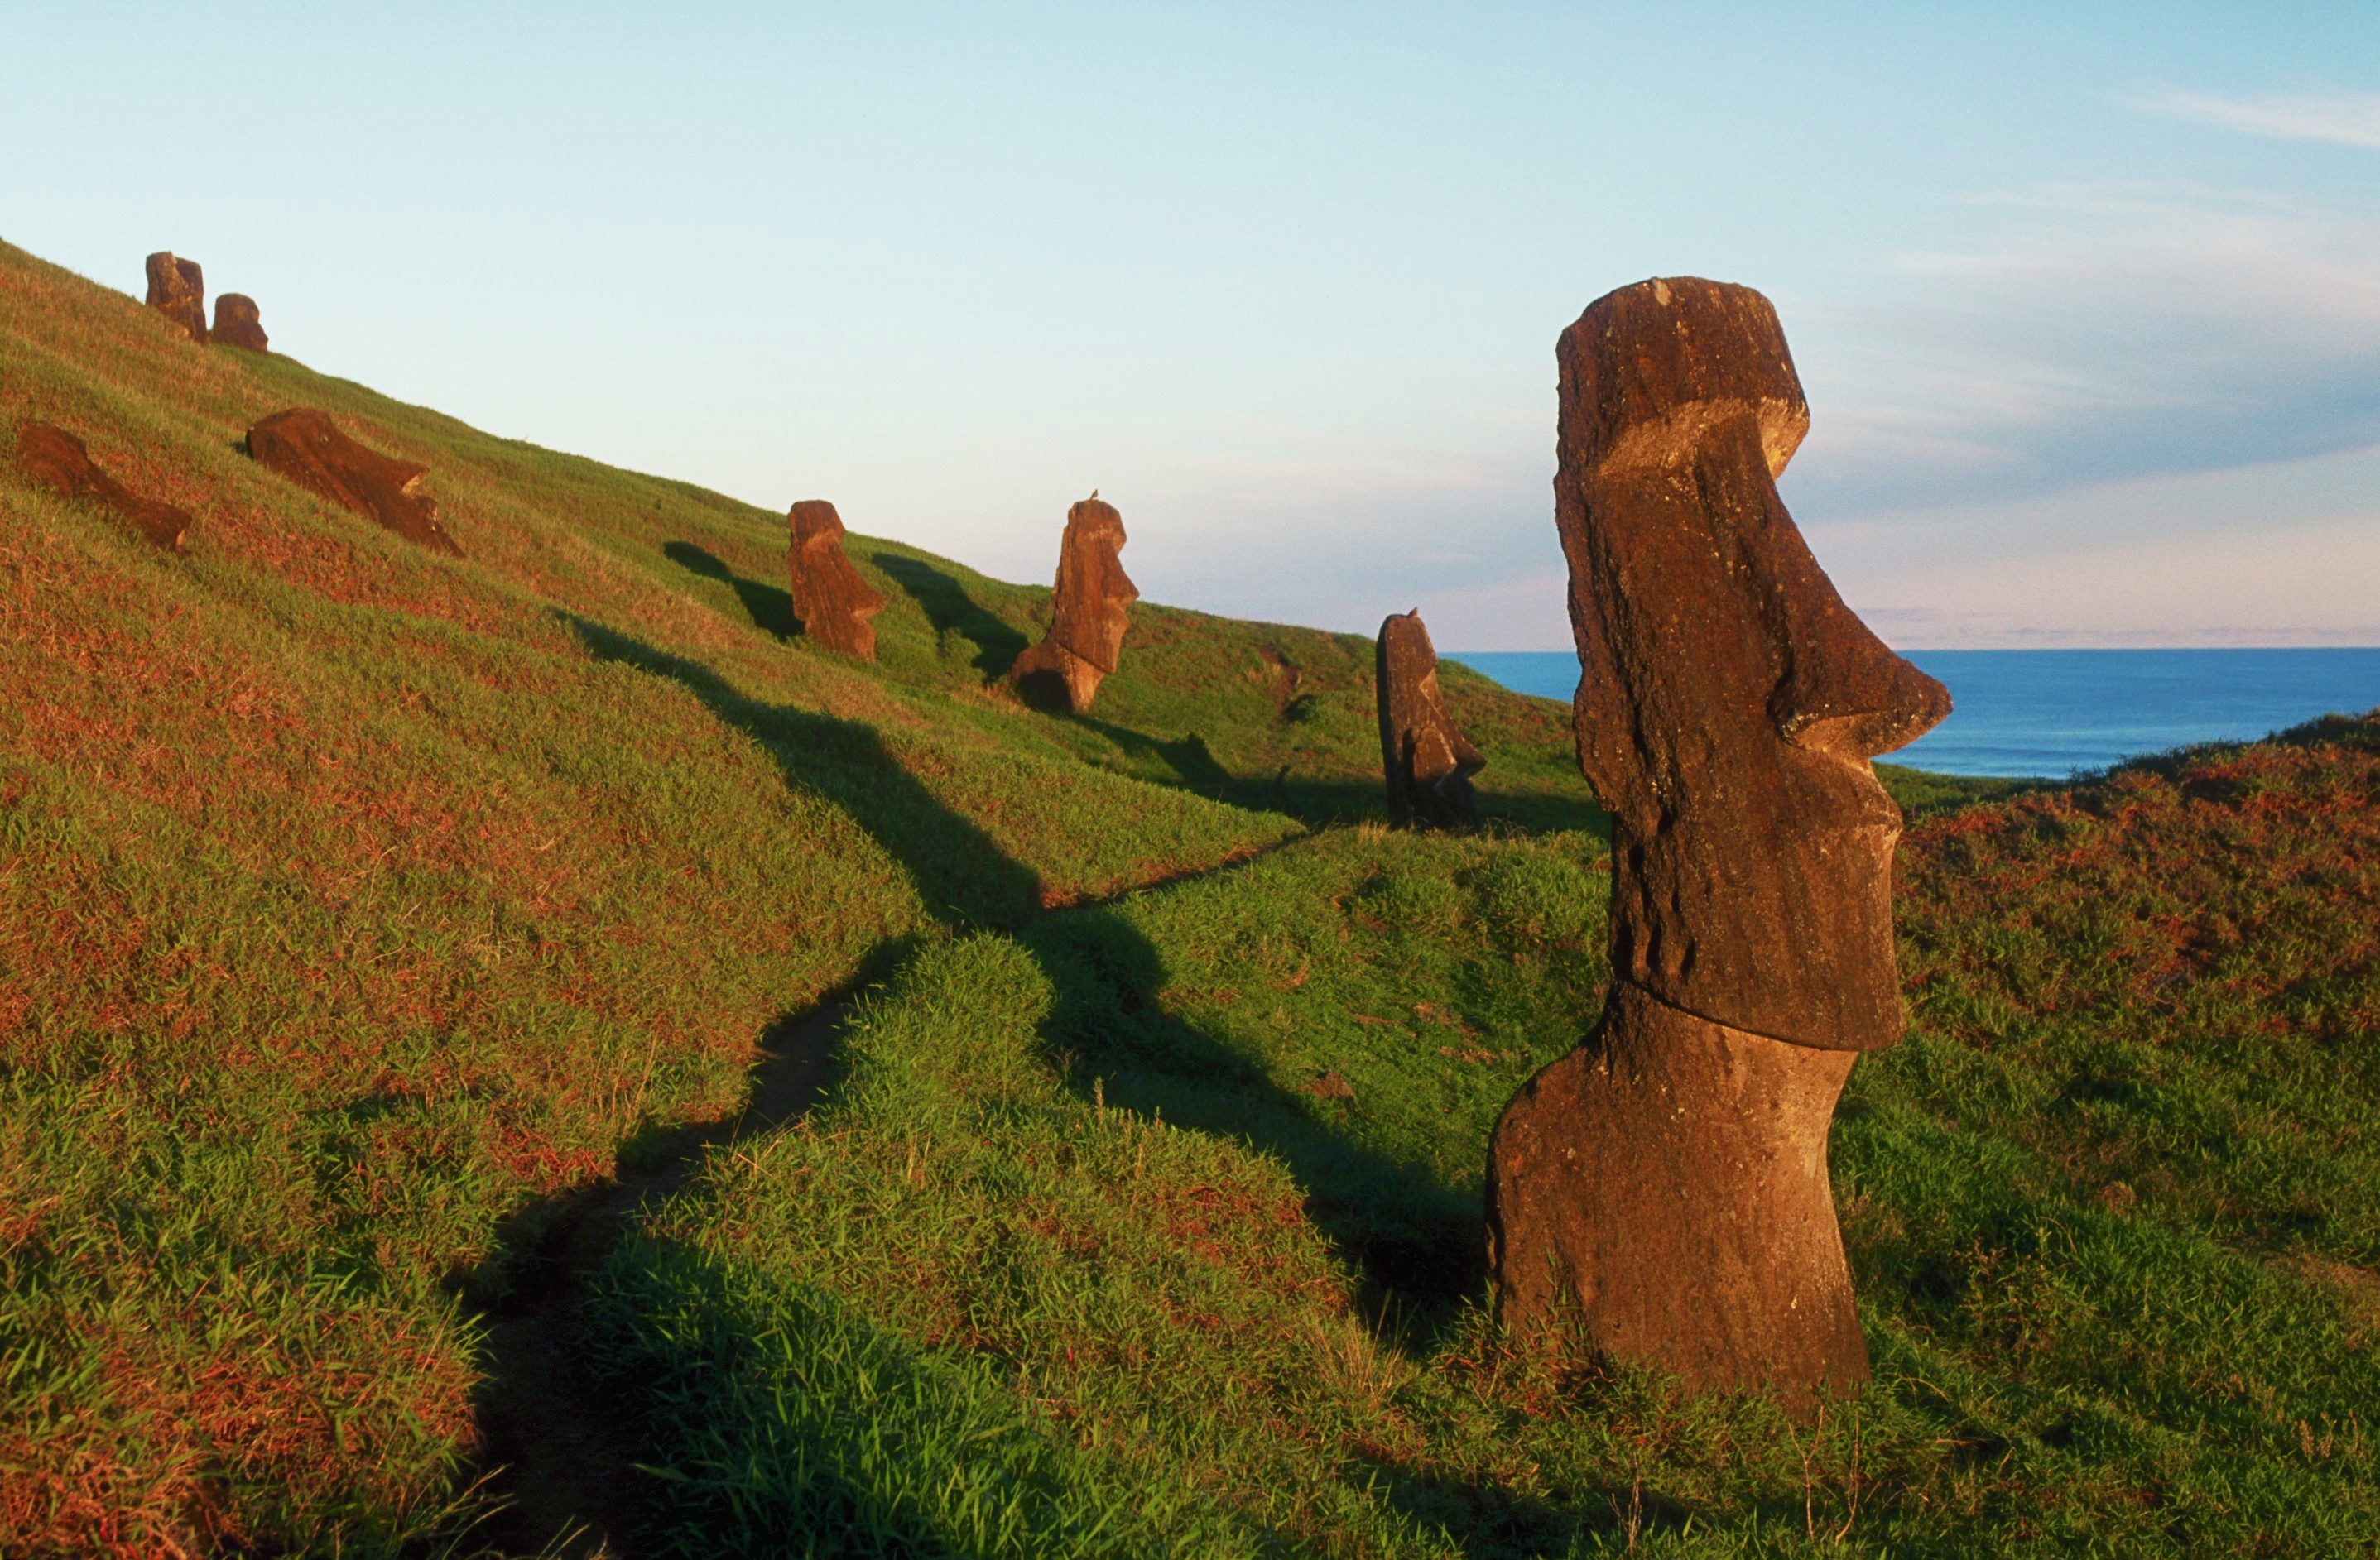 Moai Figures at Easter Island